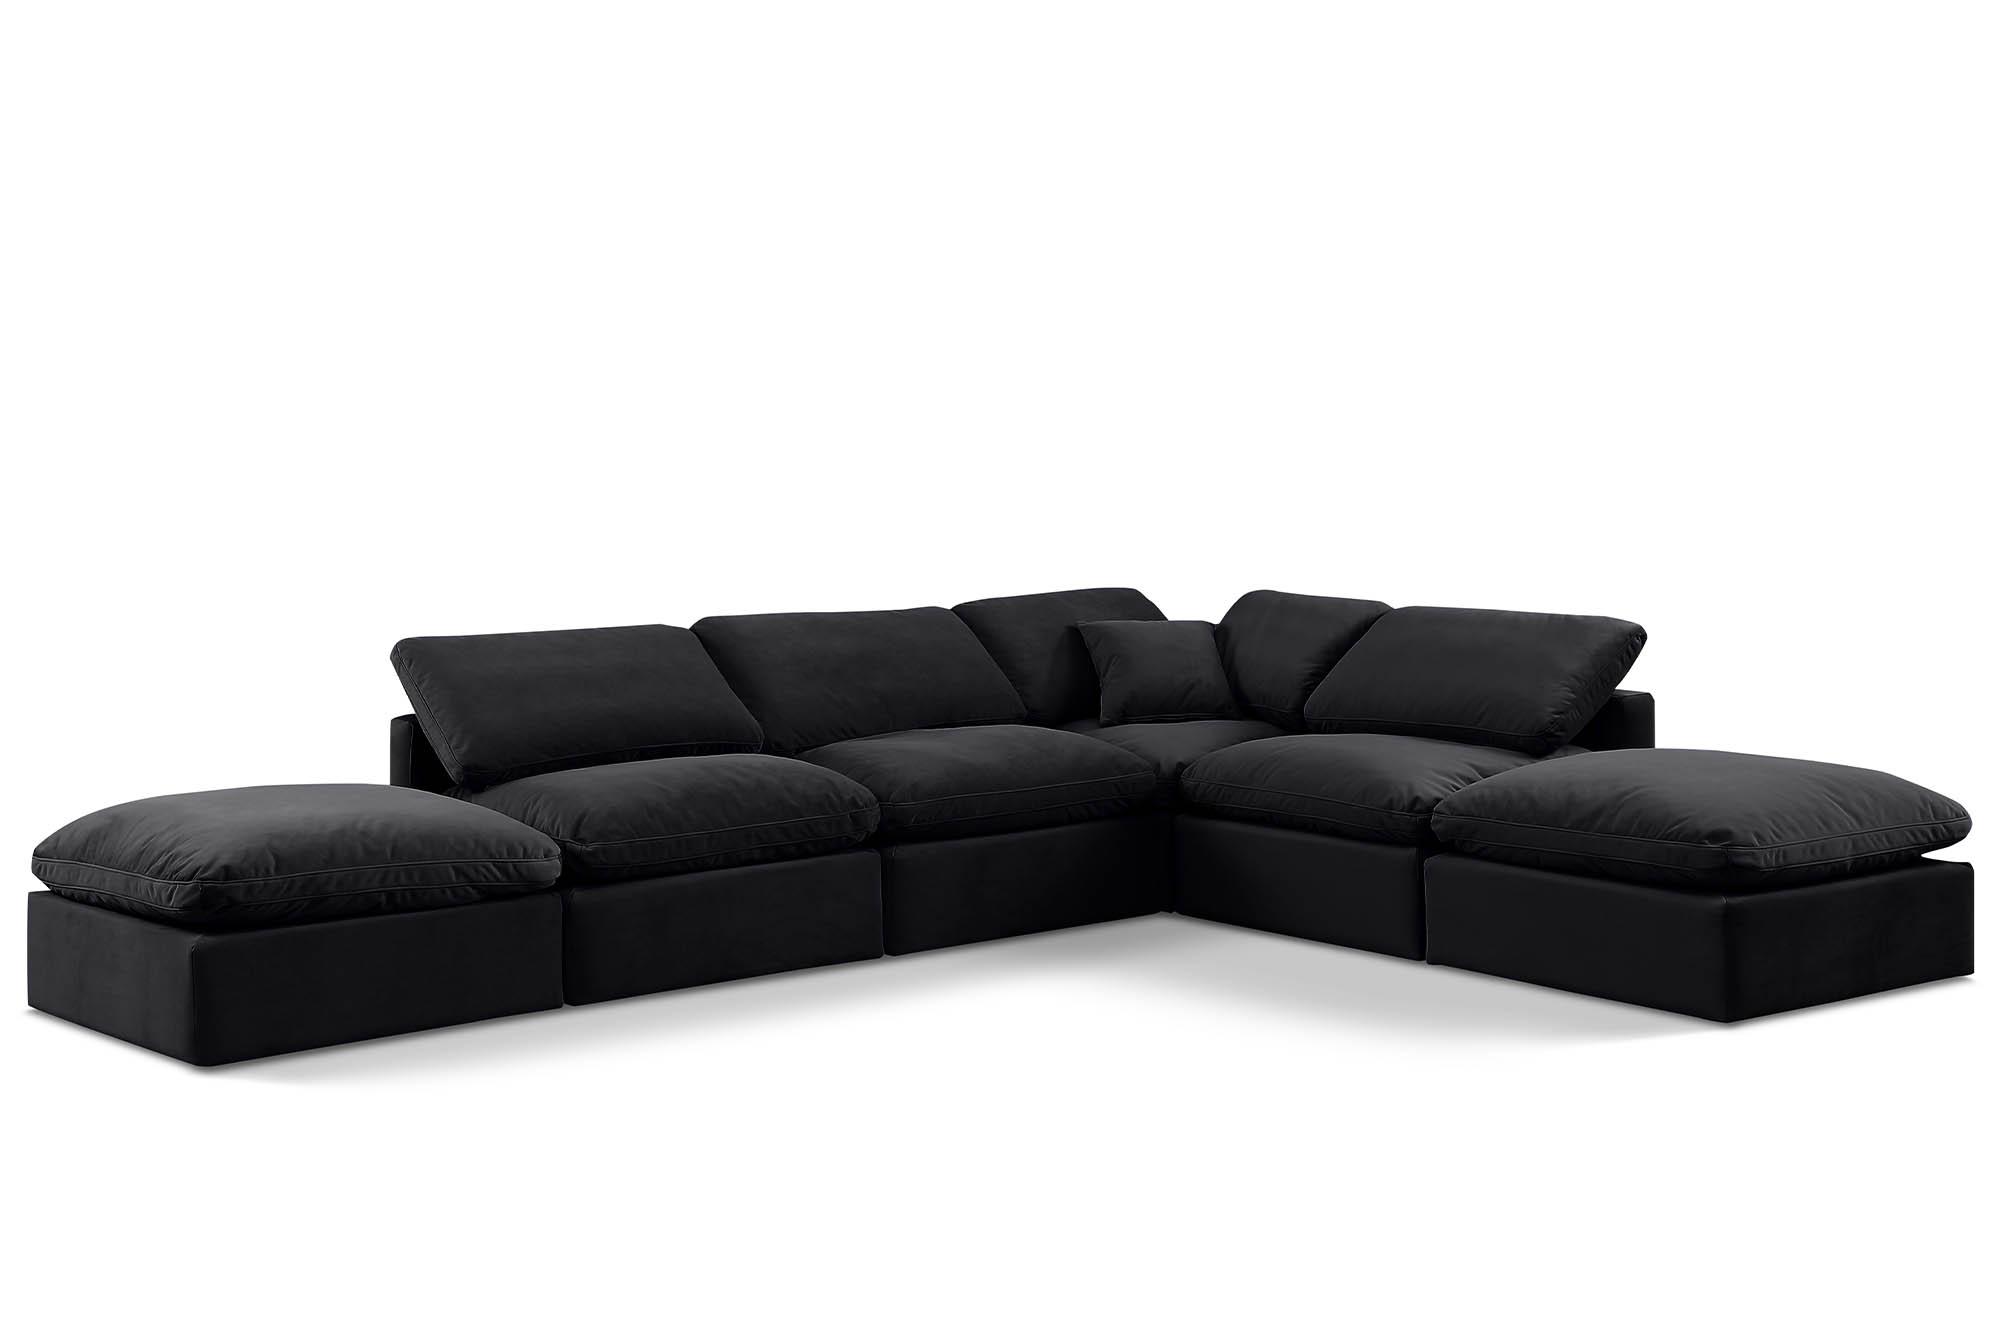 Contemporary, Modern Modular Sectional Sofa INDULGE 147Black-Sec6E 147Black-Sec6E in Black Velvet